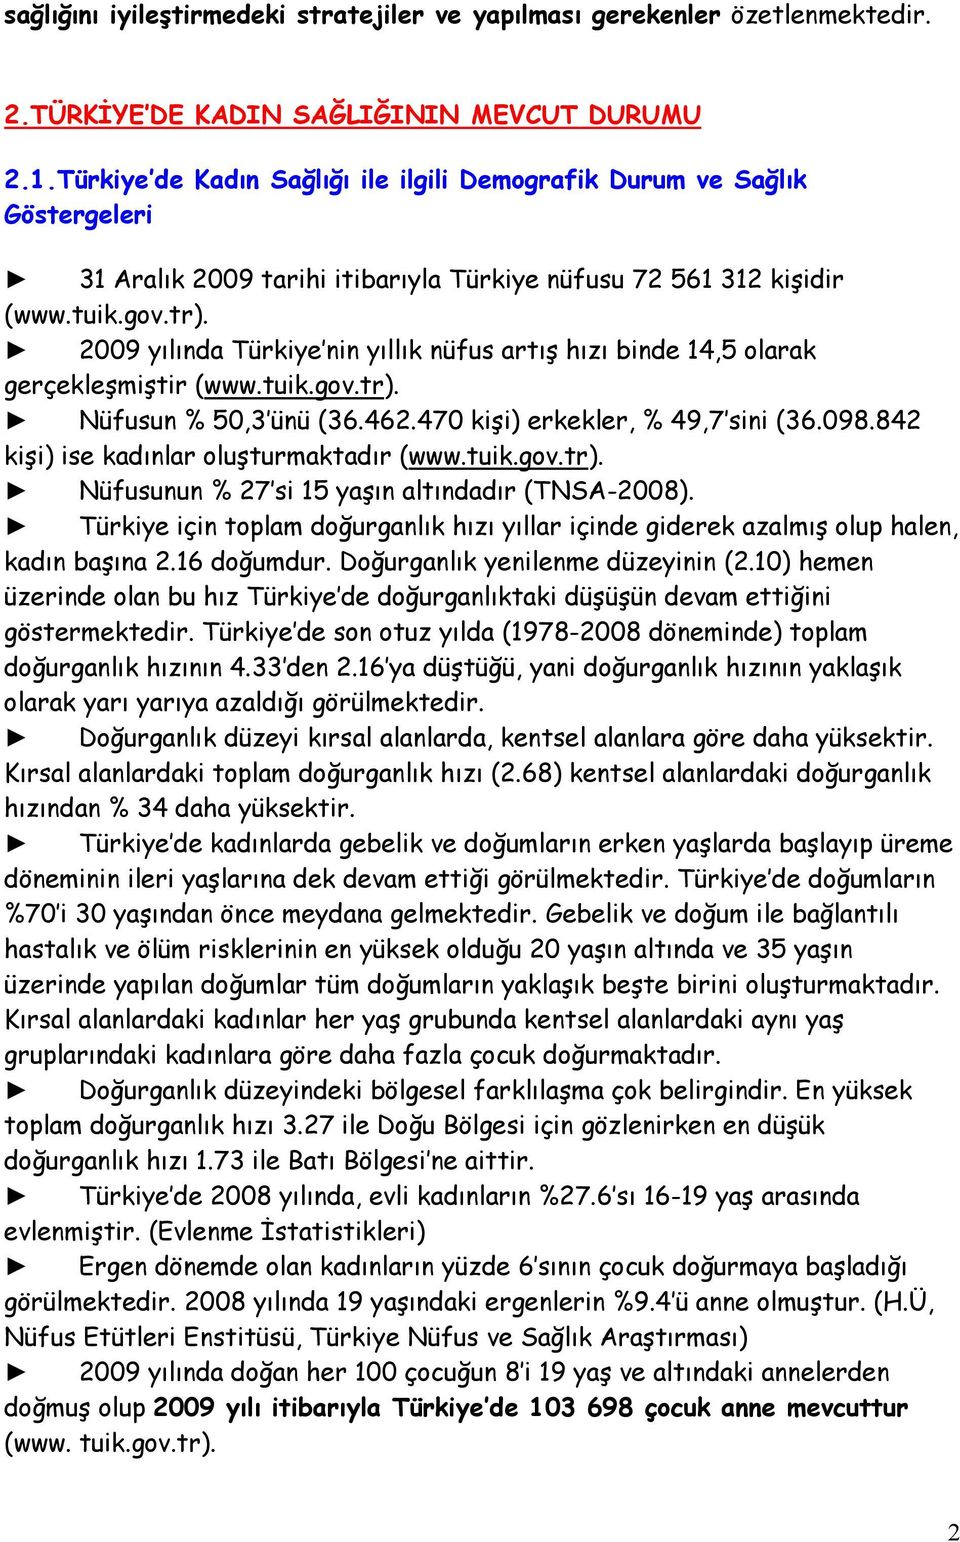 2009 yılında Türkiye nin yıllık nüfus artış hızı binde 14,5 olarak gerçekleşmiştir (www.tuik.gov.tr). Nüfusun % 50,3 ünü (36.462.470 kişi) erkekler, % 49,7 sini (36.098.